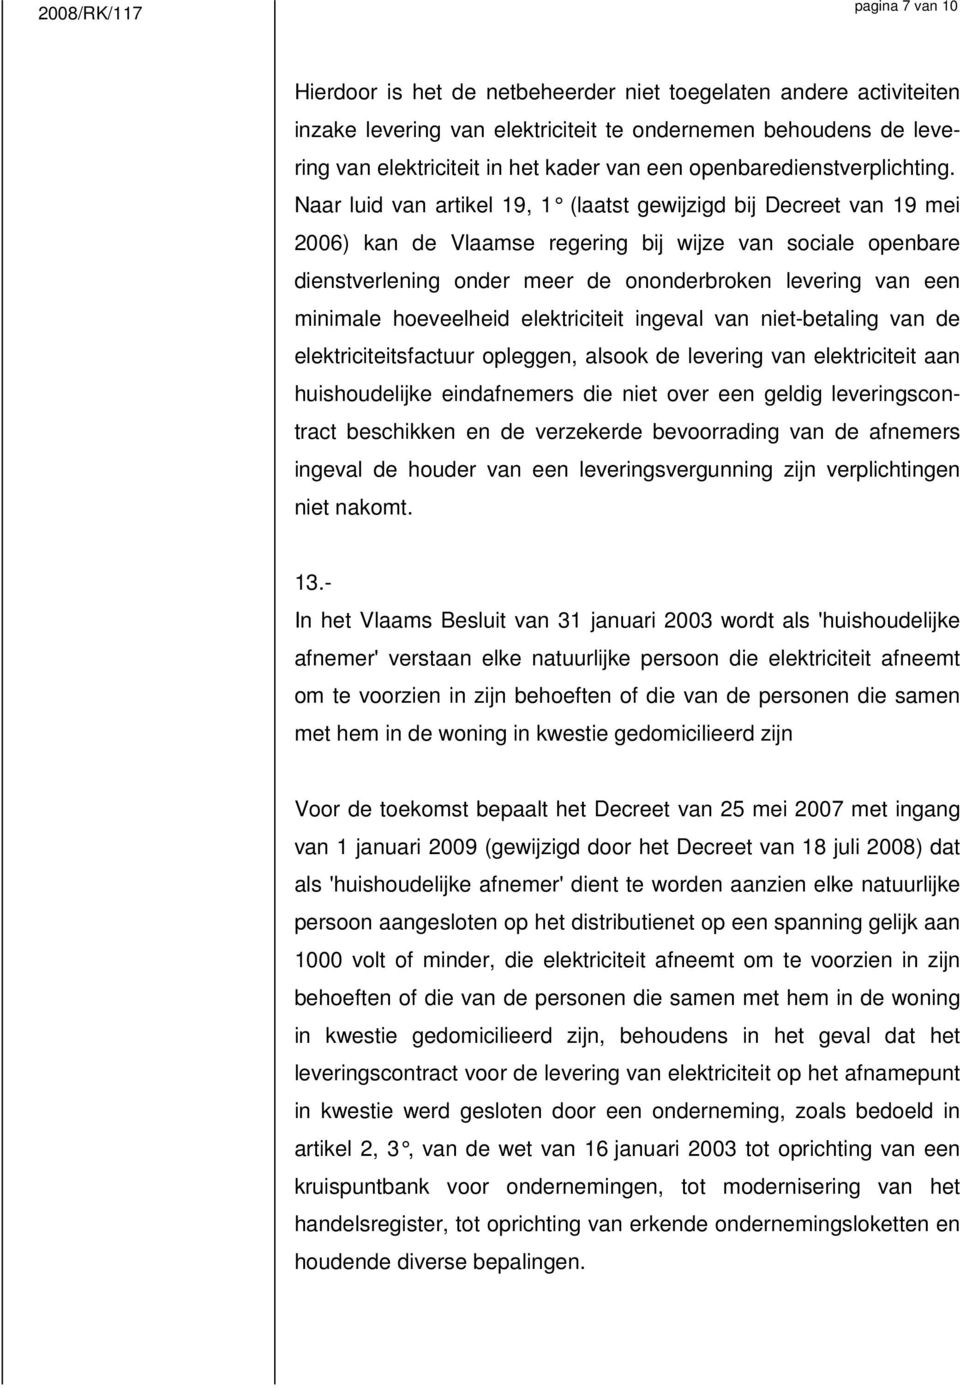 Naar luid van artikel 19, 1 (laatst gewijzigd bij Decreet van 19 mei 2006) kan de Vlaamse regering bij wijze van sociale openbare dienstverlening onder meer de ononderbroken levering van een minimale